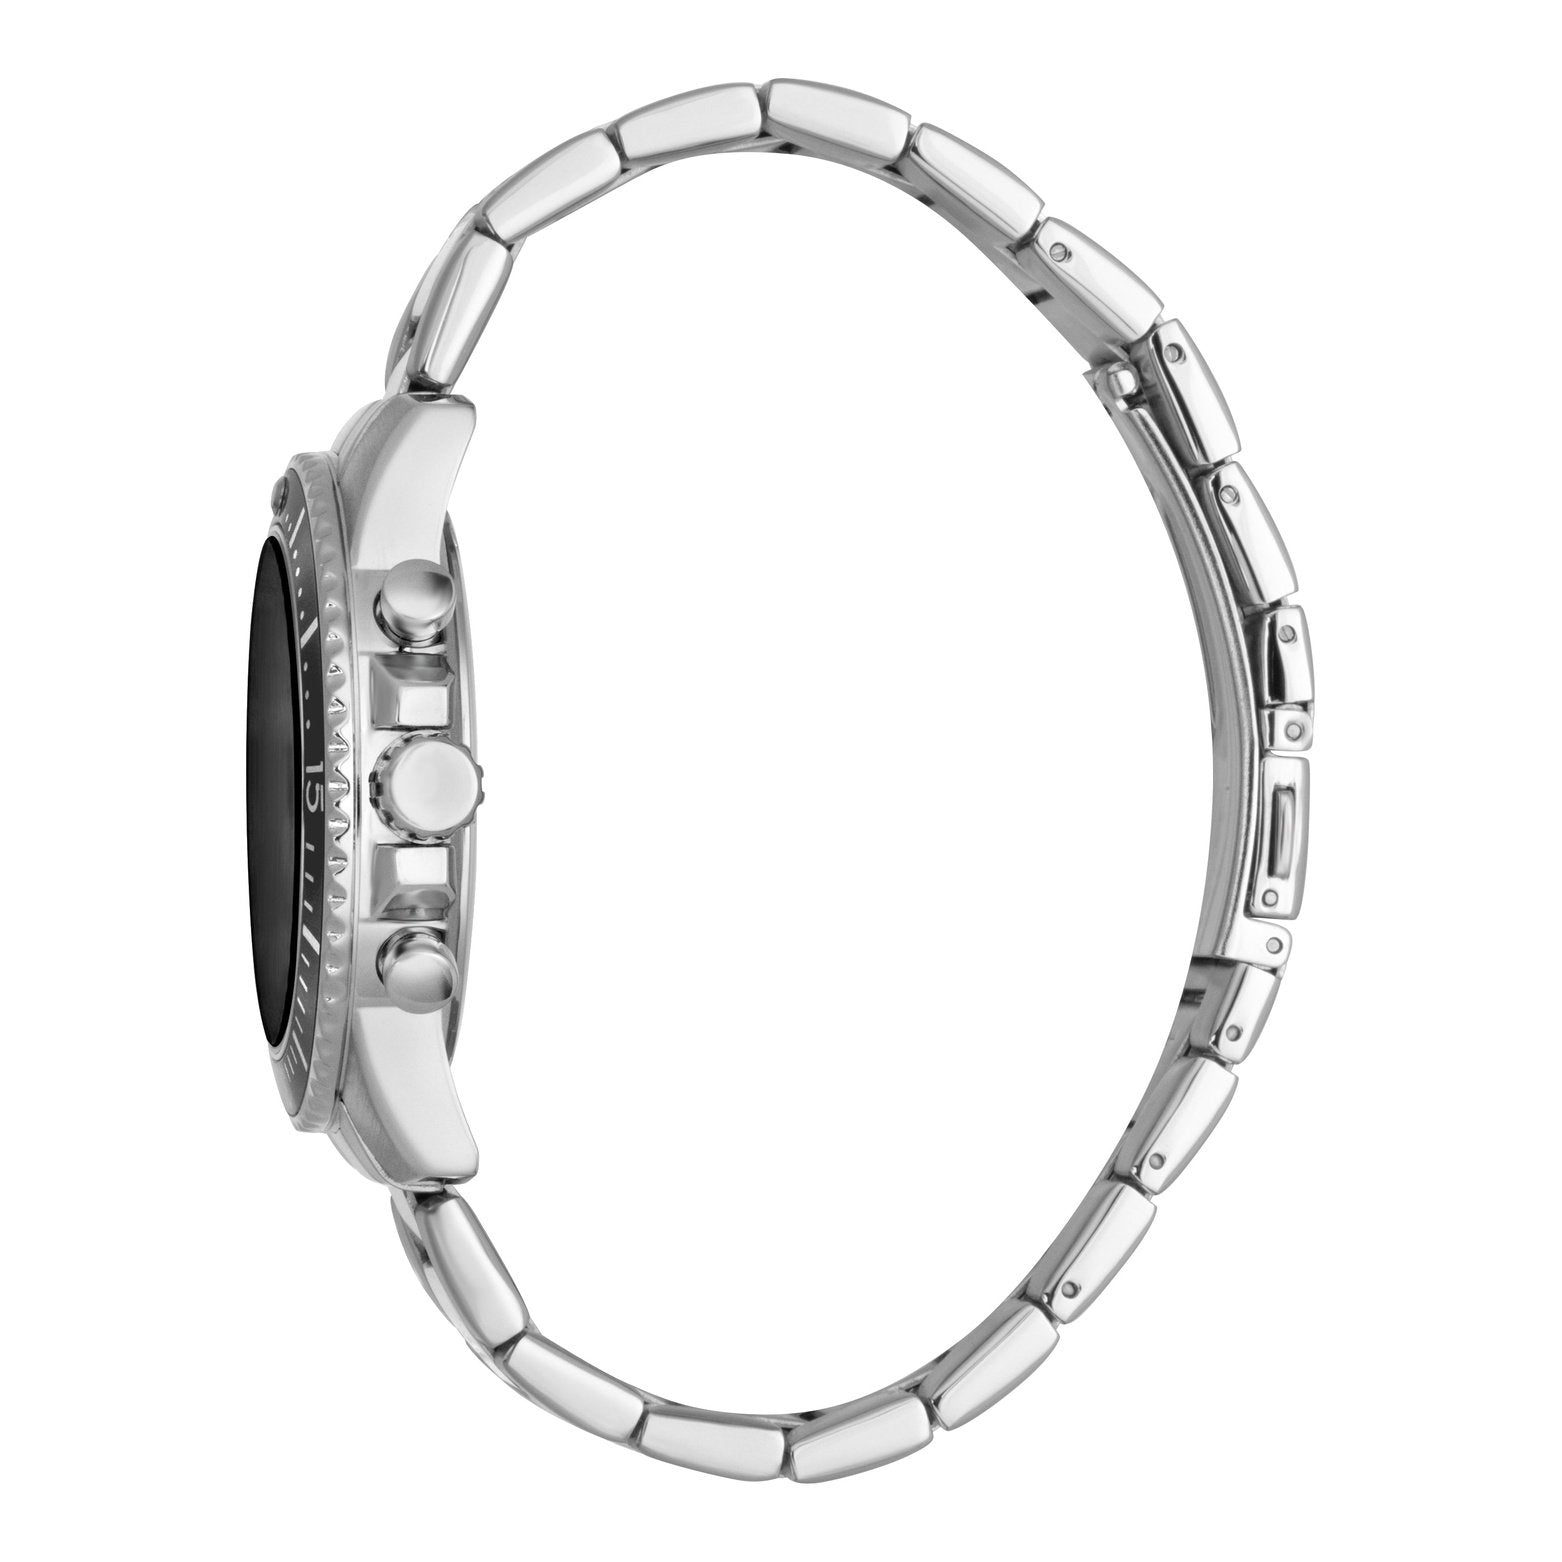 Men's Hudson Chrono Watch ES1G373M0075 Esprit